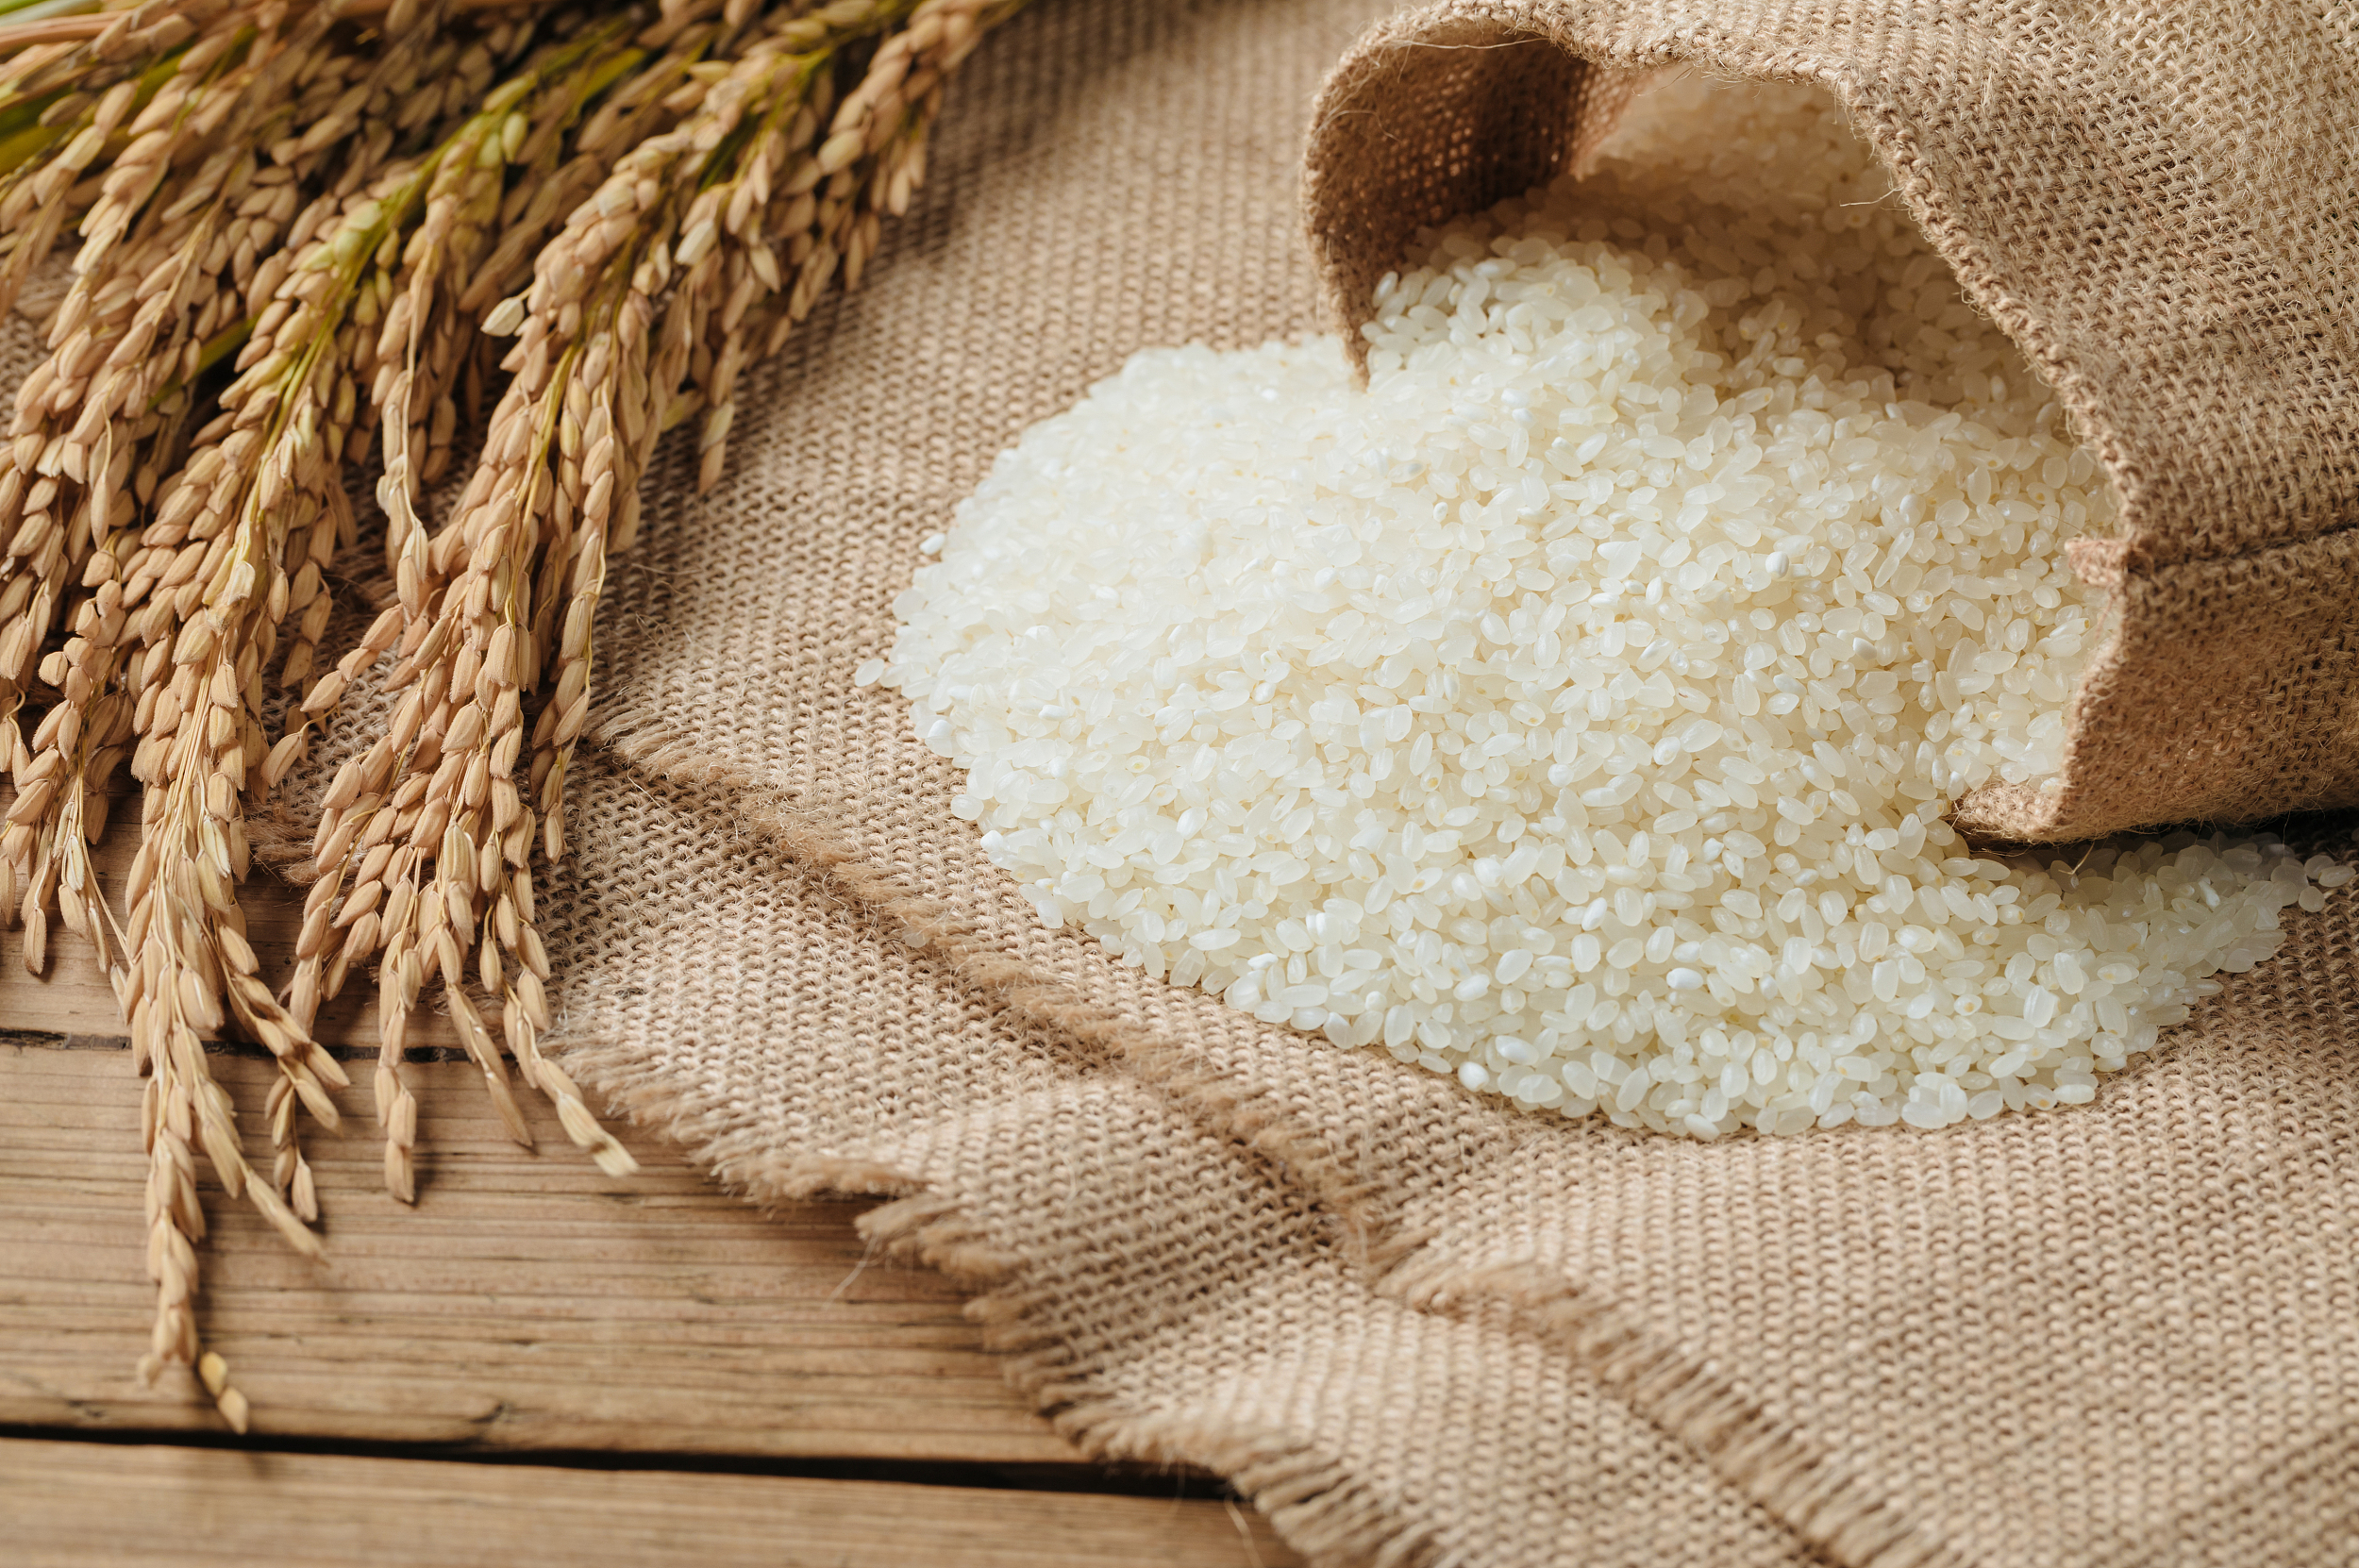 高端大米有多好?合理膳食比迷信高端大米更重要